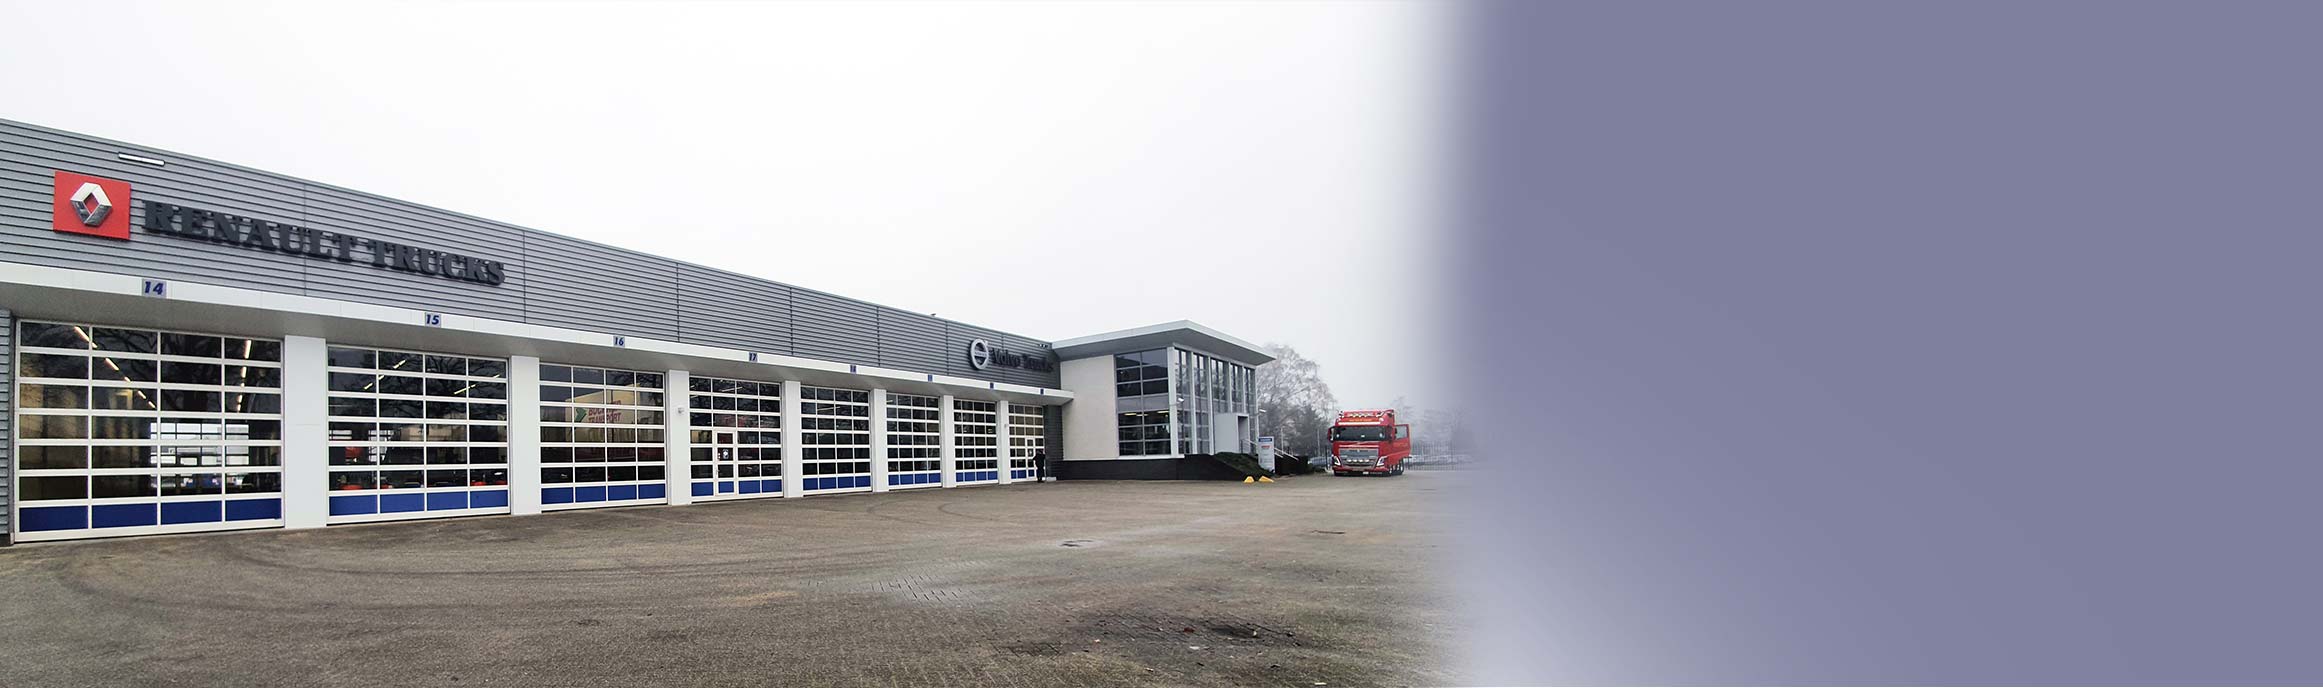 BAS Truck Center Tilburg schakelt door naar hoogste serviceniveau